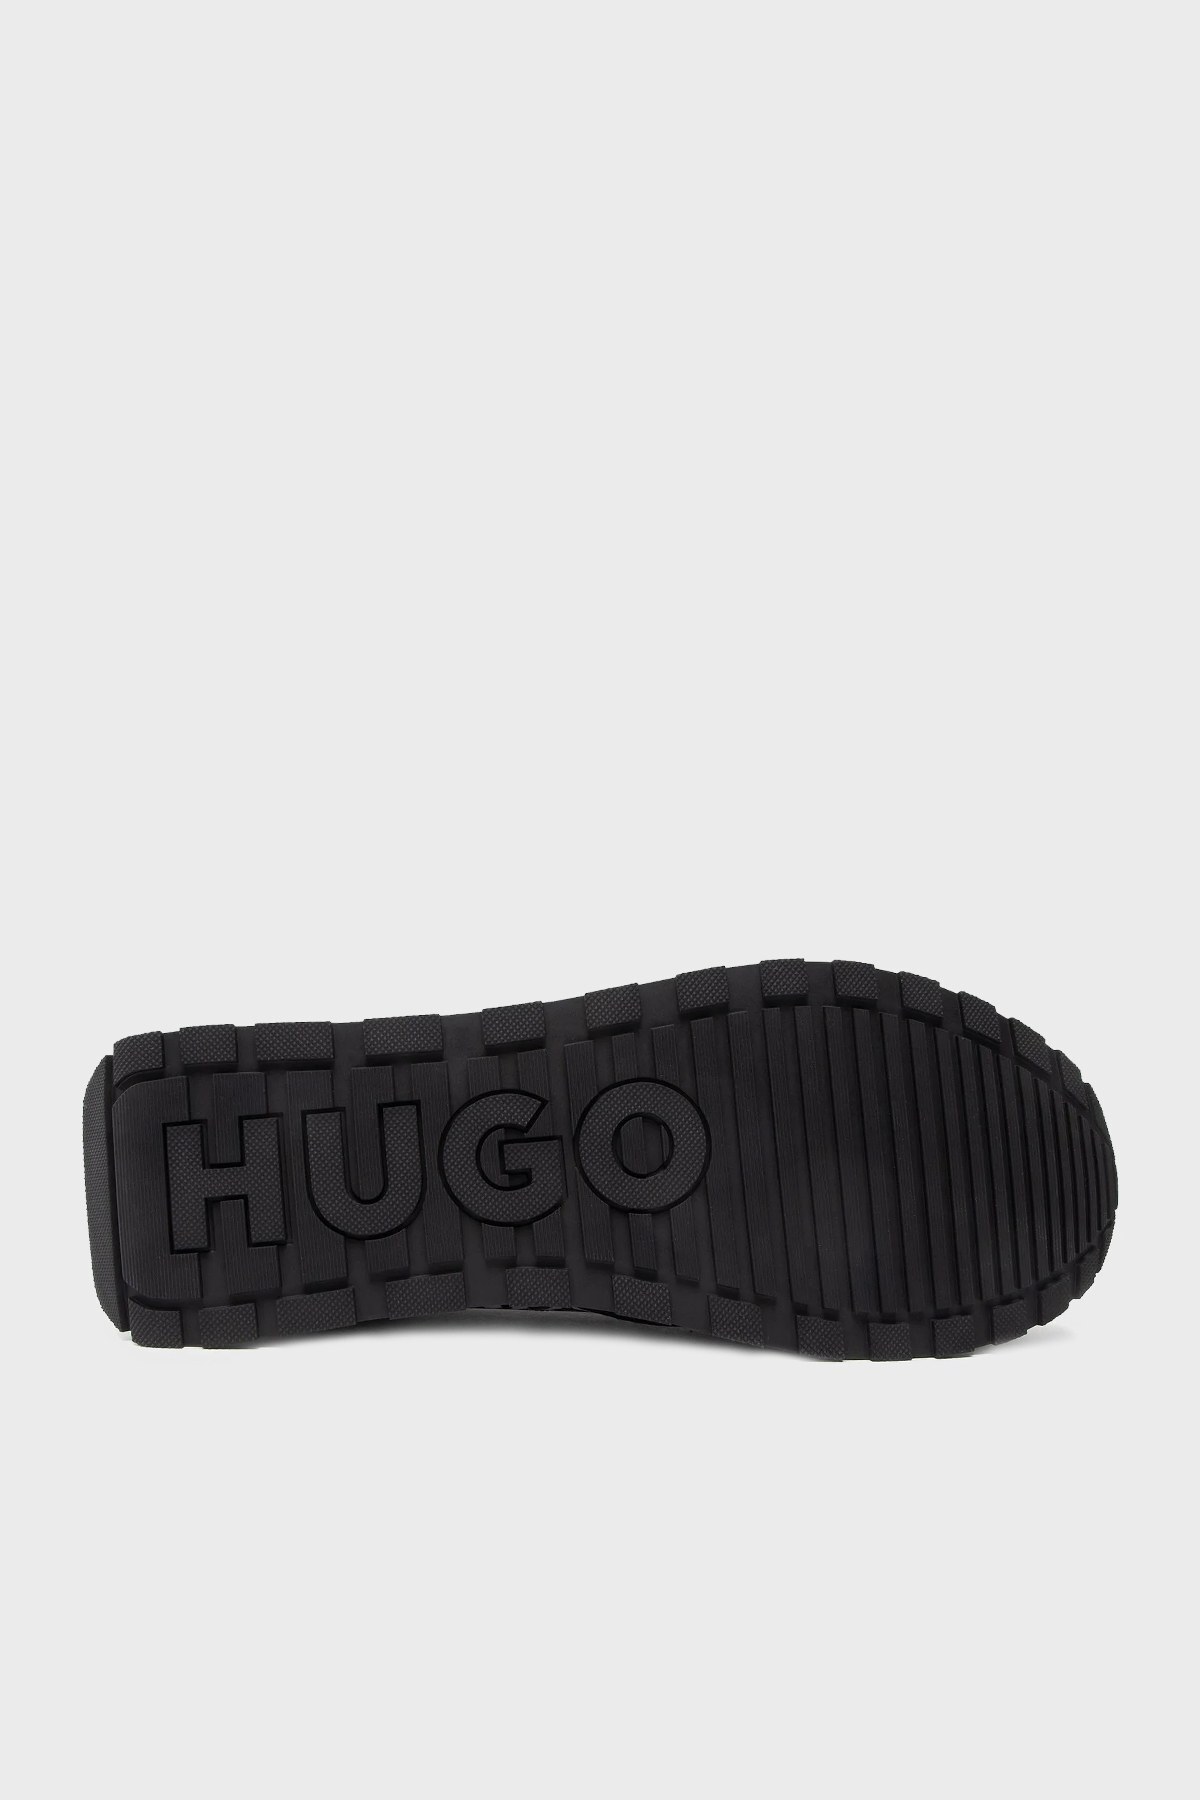 Hugo Baskılı Deri Sneaker Erkek Ayakkabı 50474057 110 SİYAH-BEYAZ